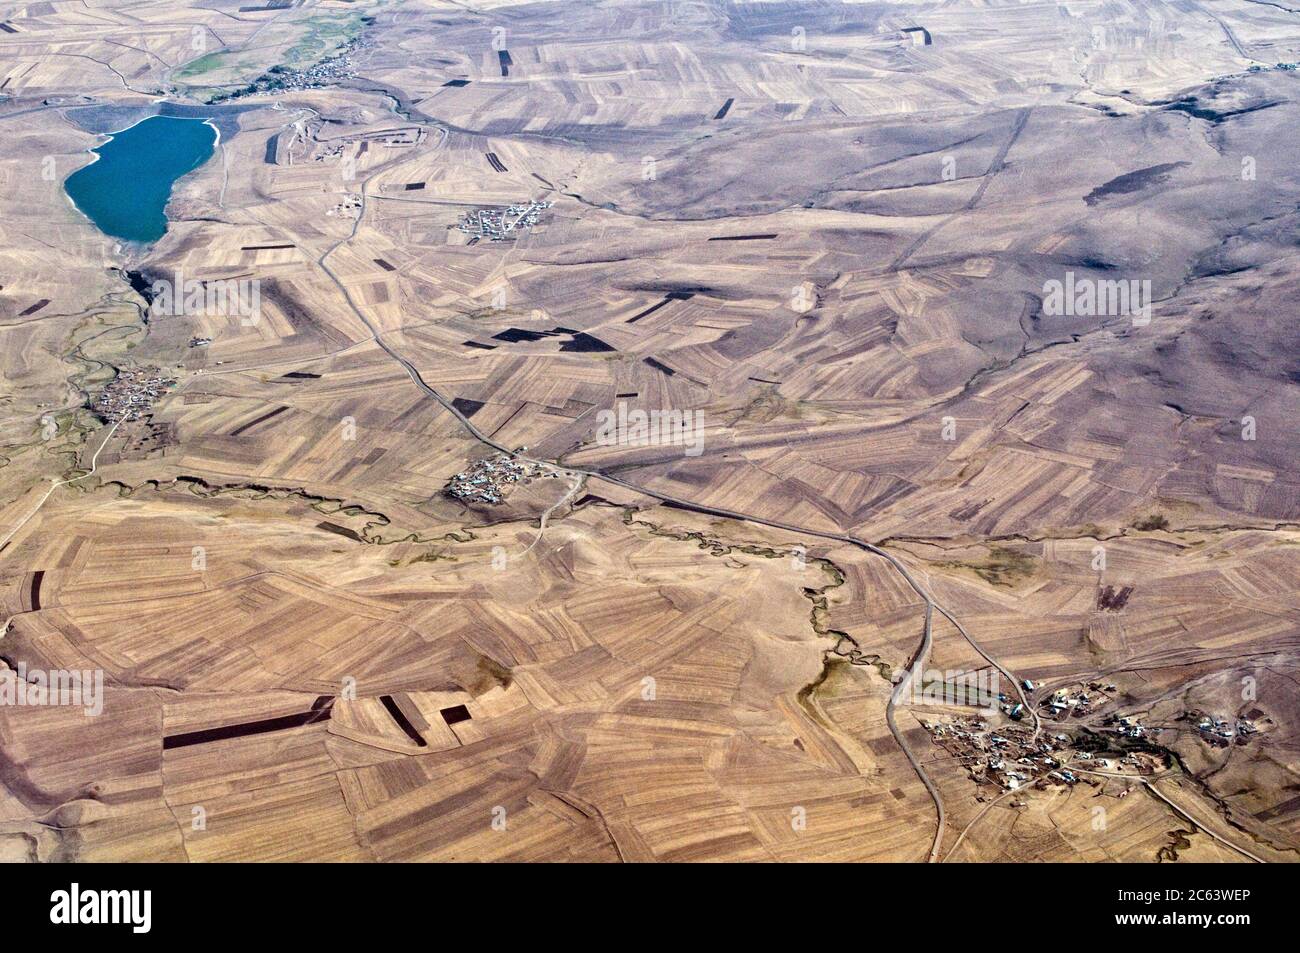 Vista aérea de las tierras de cultivo en las estepas turcas cerca de la ciudad de Kars y la frontera con Armenia en la región oriental de Anatolia, al noreste de Turquía. Foto de stock